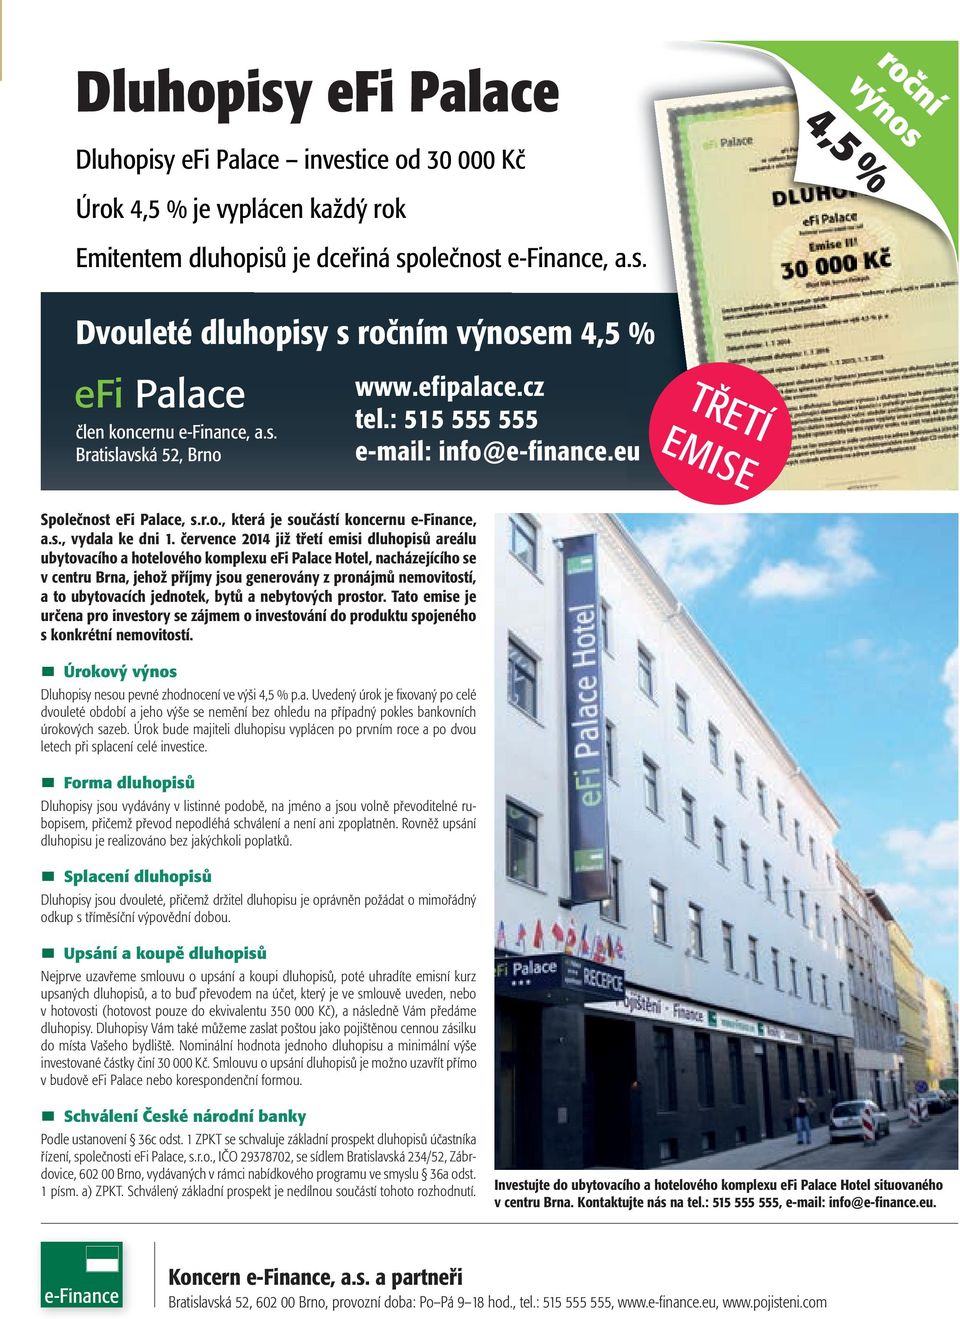 července 2014 již třetí emisi dluhopisů areálu ubytovacího a hotelového komplexu efi Palace Hotel, nacházejícího se v centru Brna, jehož příjmy jsou generovány z pronájmů nemovitostí, a to